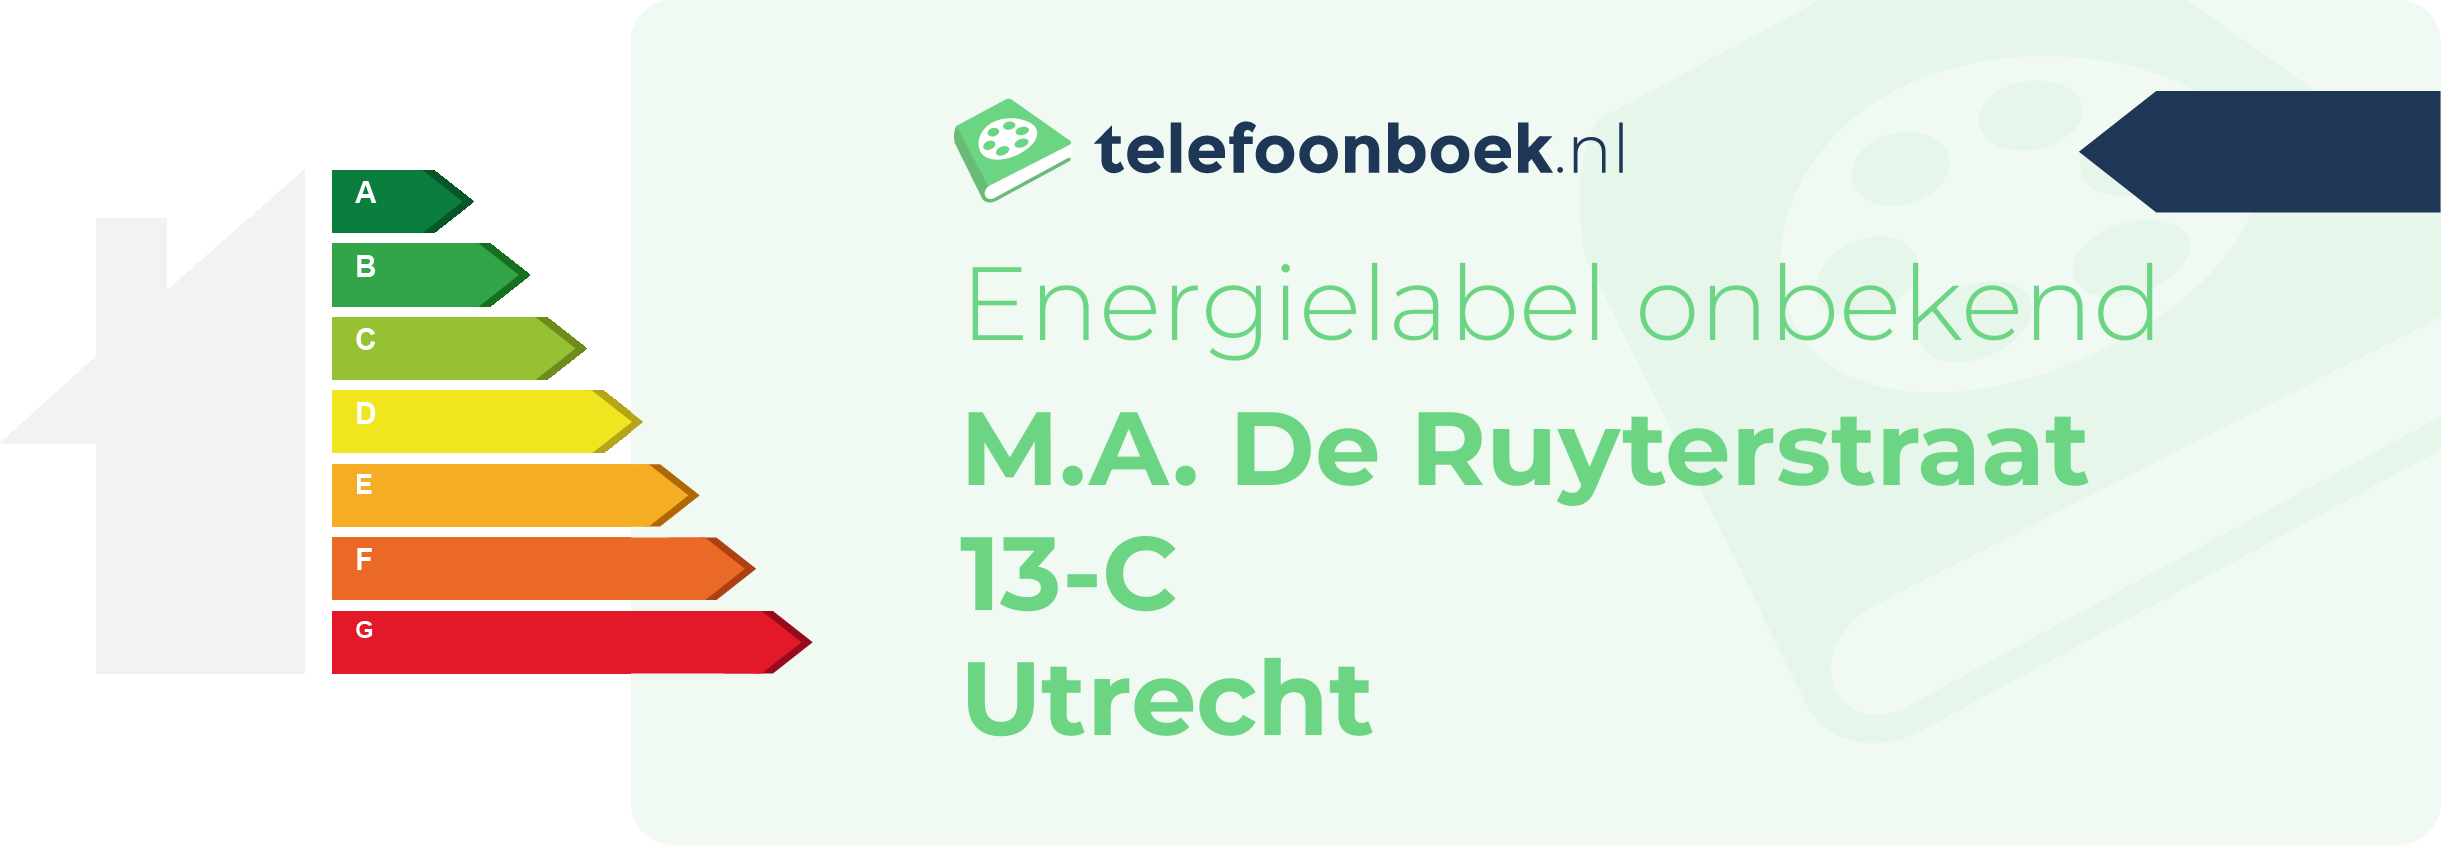 Energielabel M.A. De Ruyterstraat 13-C Utrecht